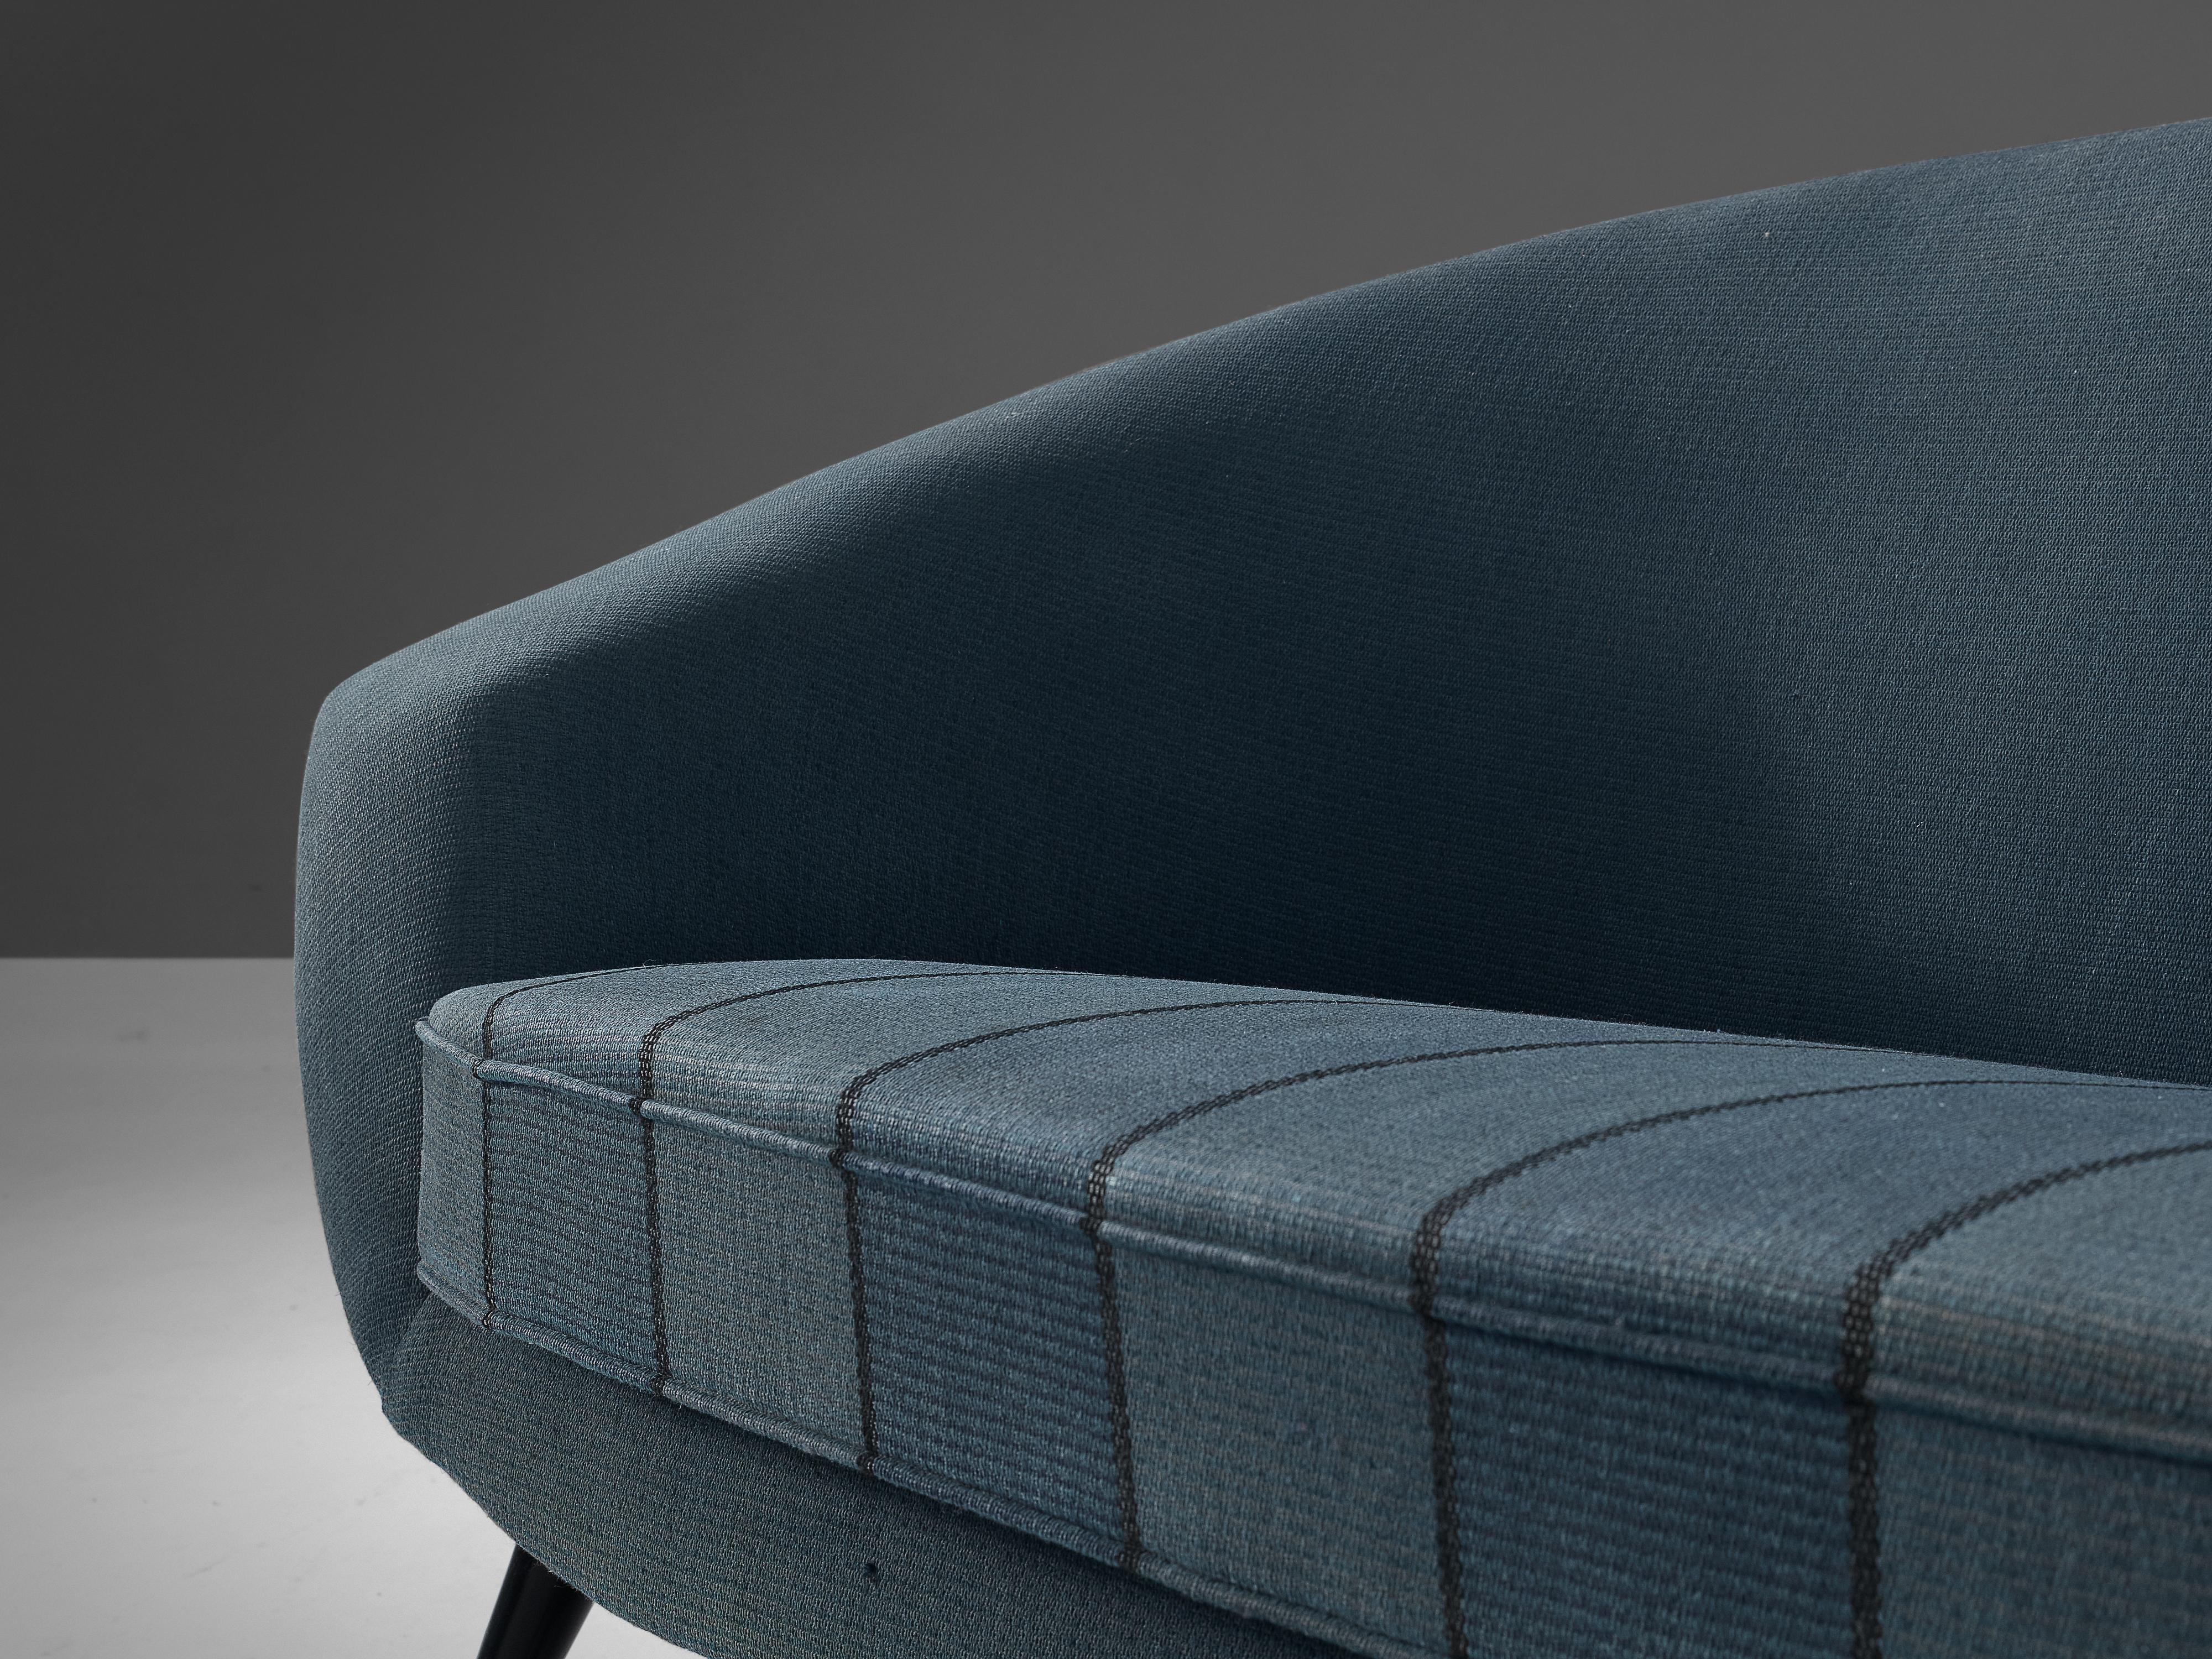 Brass Folke Jansson 'Tellus' Sofa in Blue Upholstery